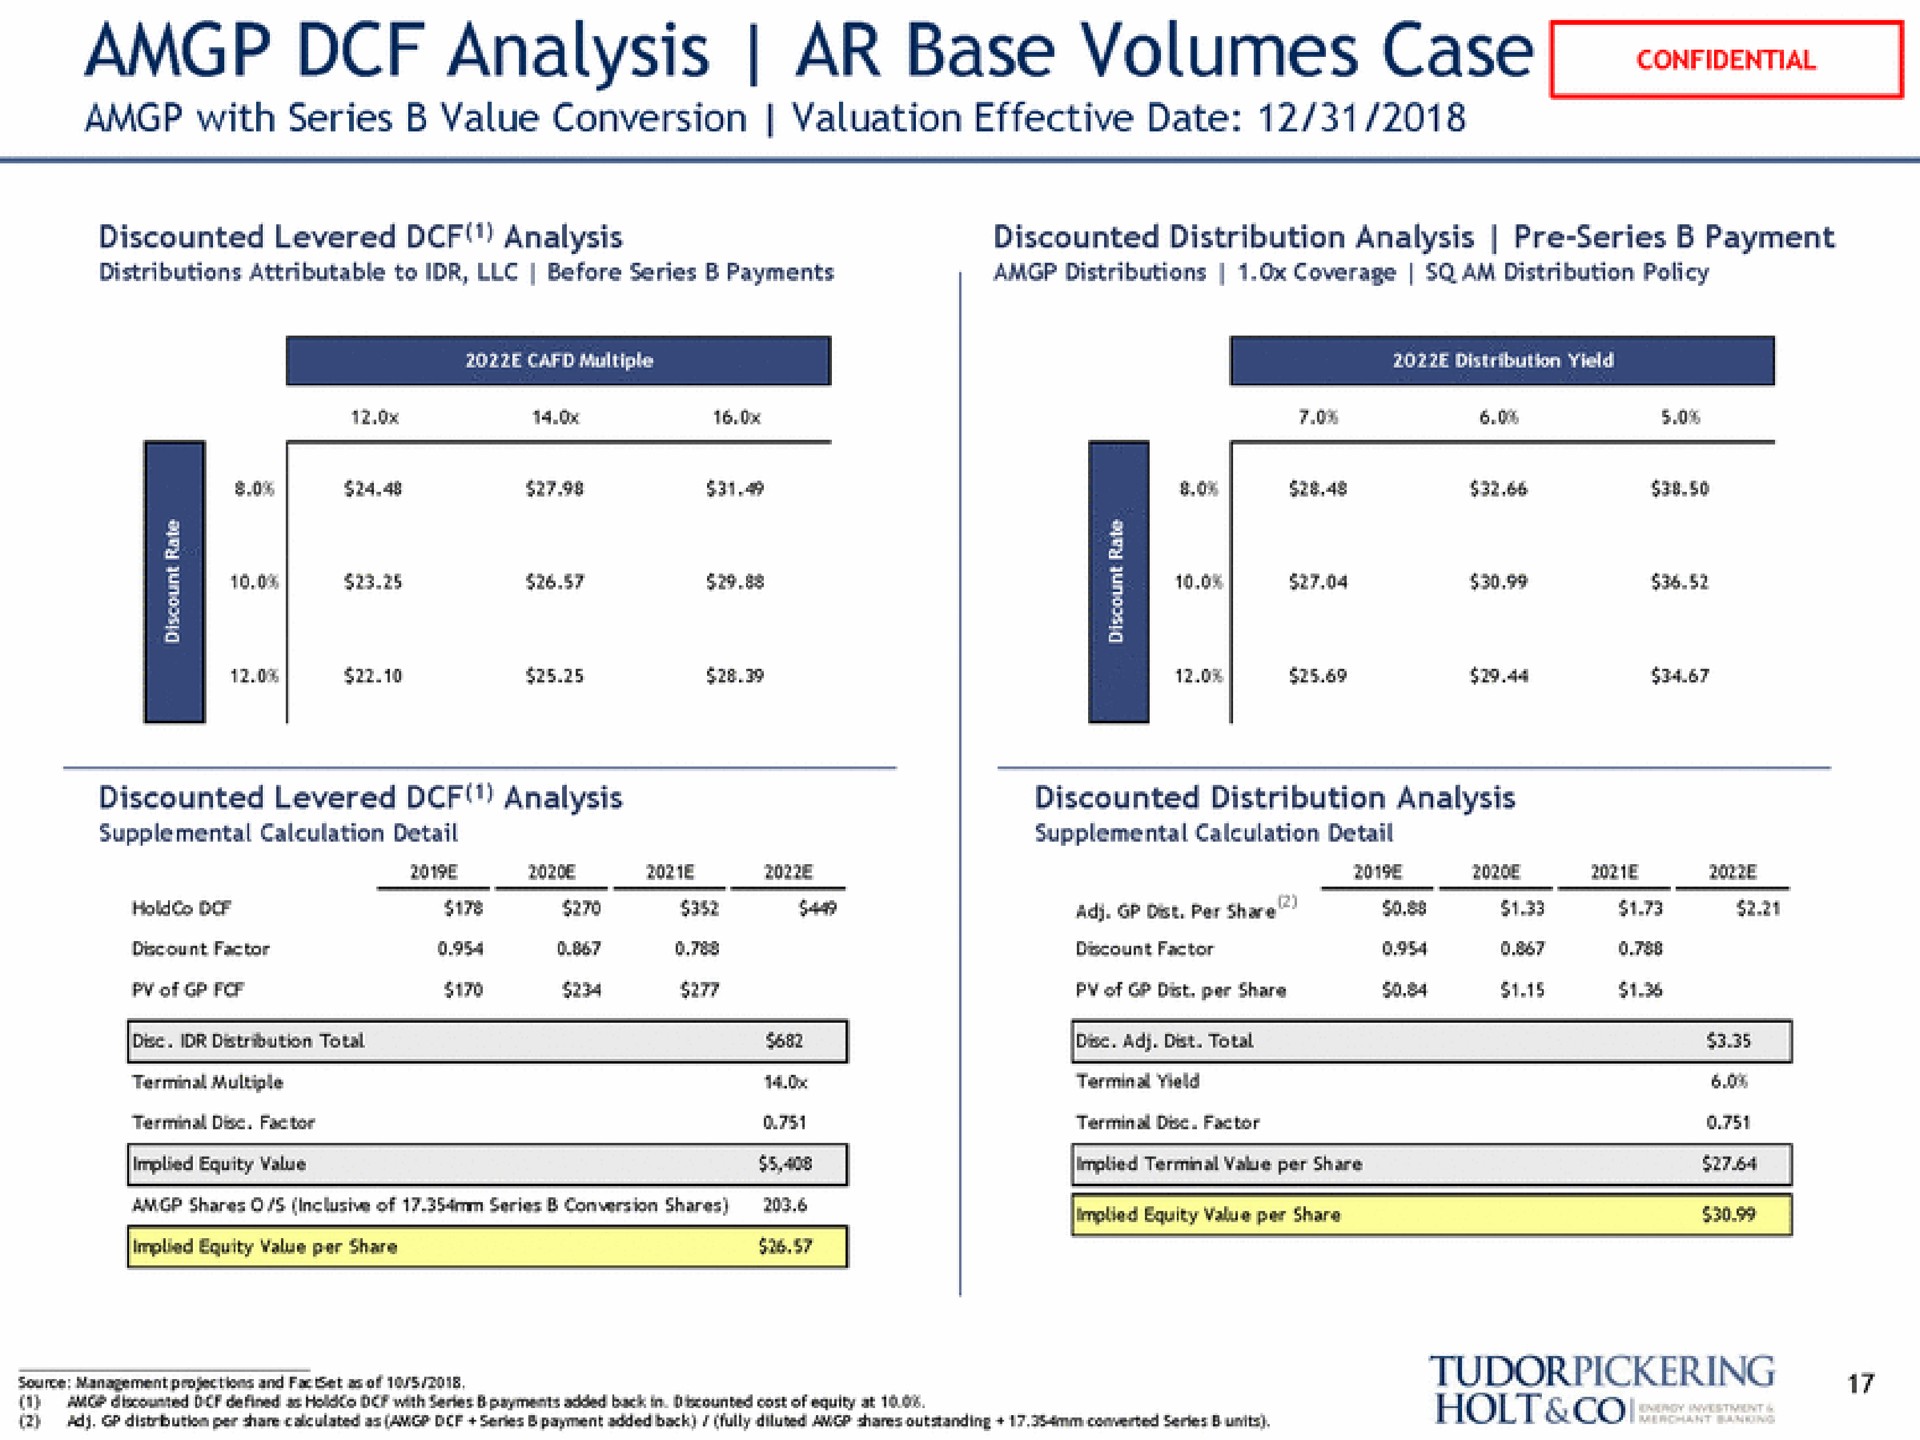 analysis base volumes case | Tudor, Pickering, Holt & Co